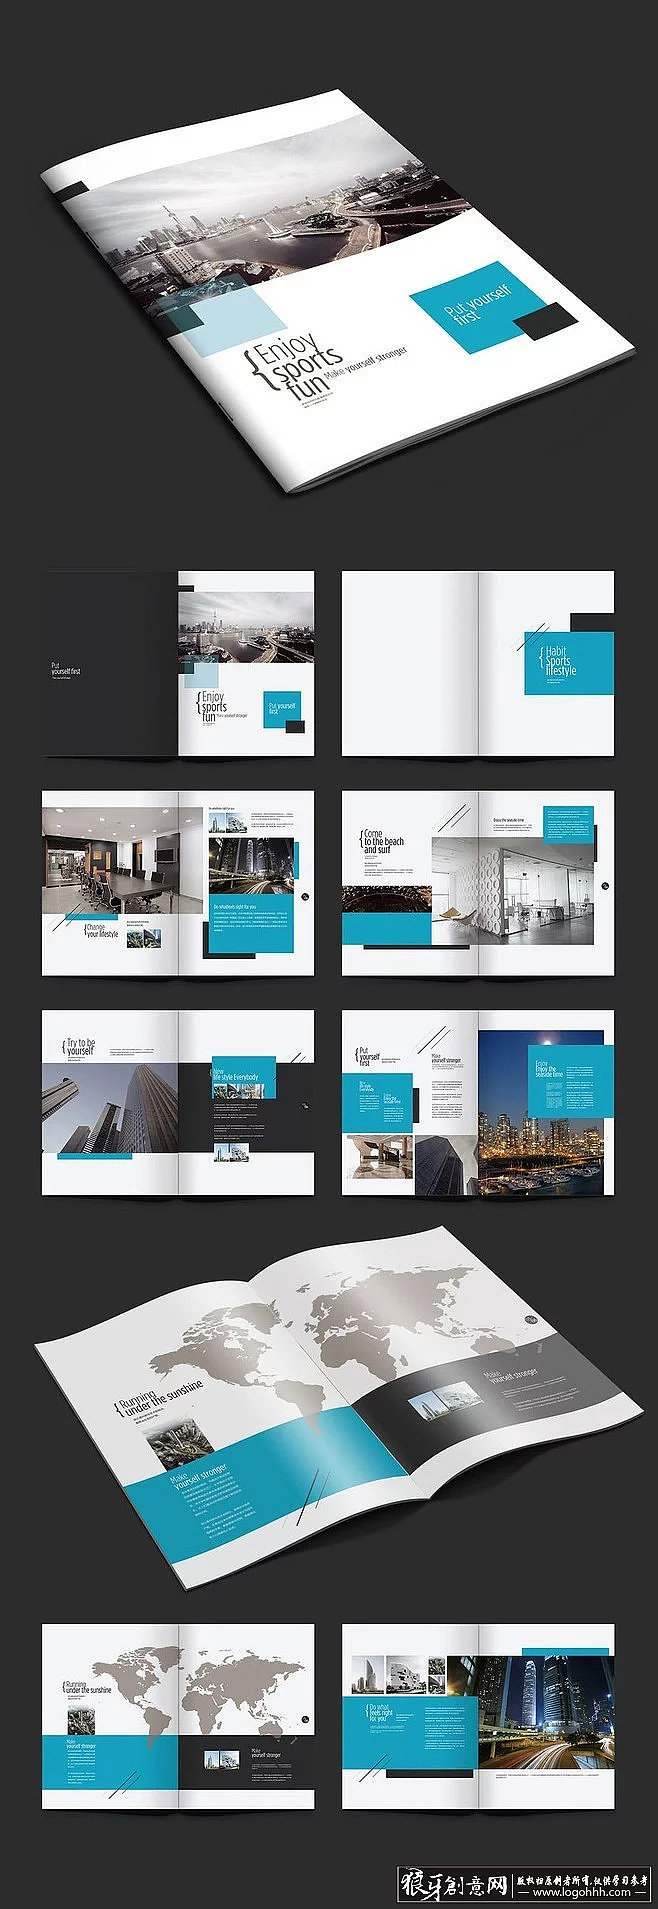 创意画册蓝色企业宣传册科技画册企业手册企业画册宣传画册宣传图册